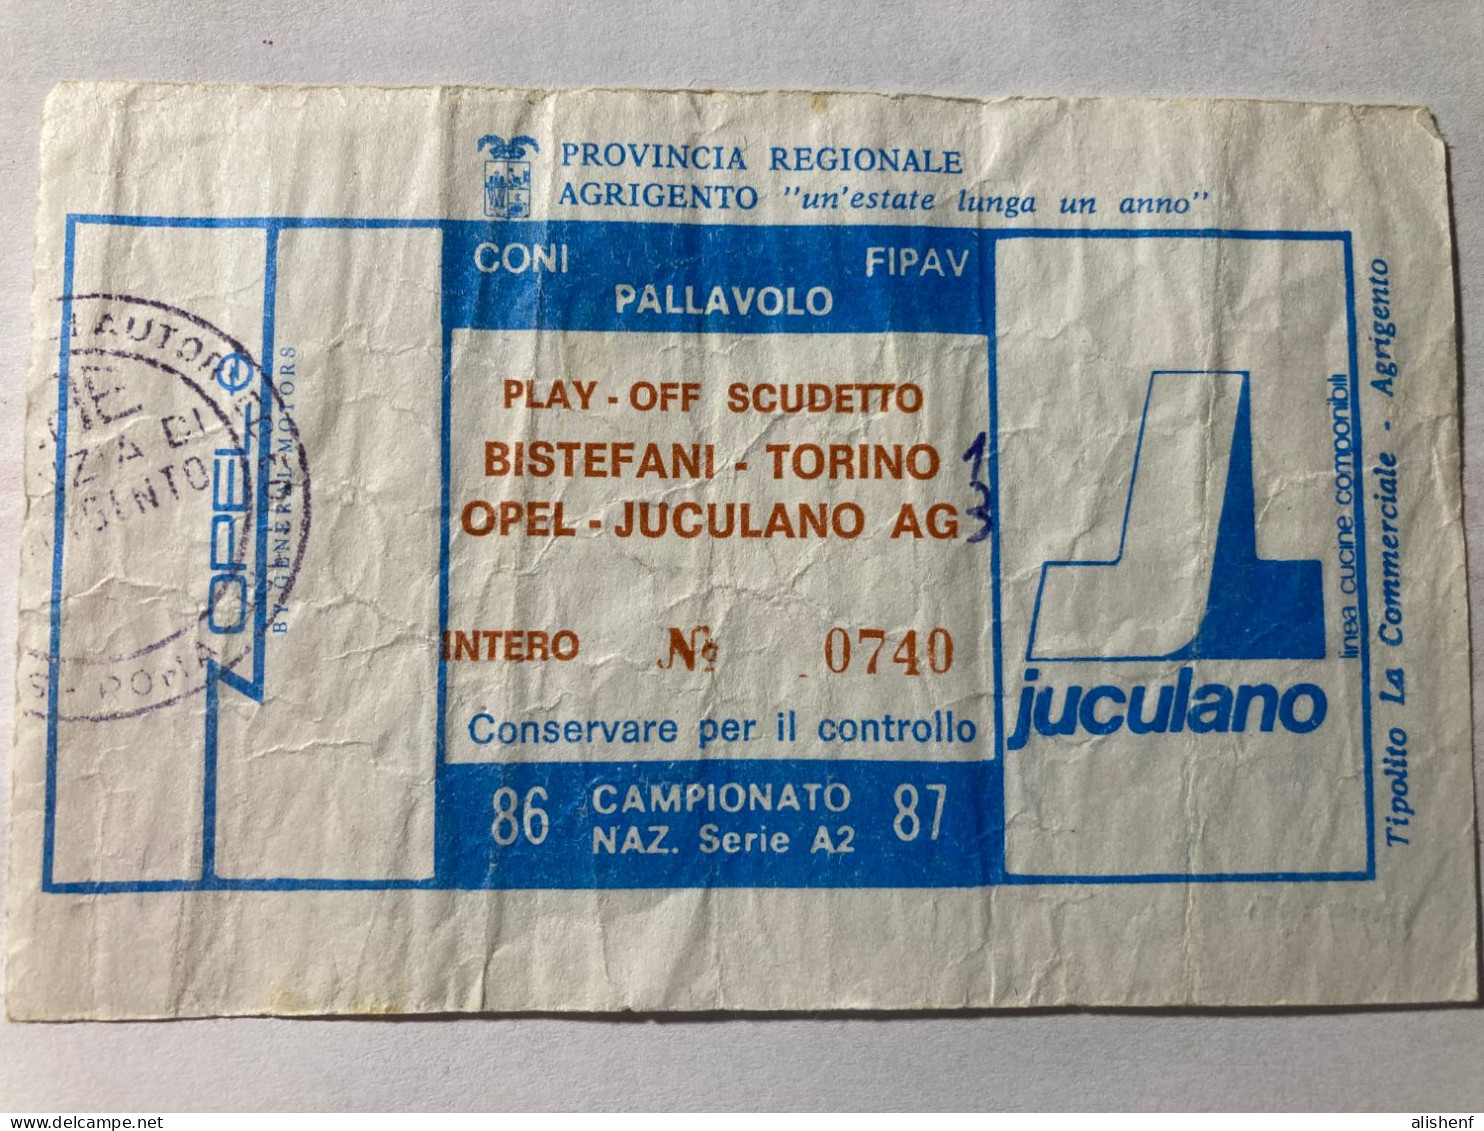 Biglietto Pallavolo Maschile A2 Play Off Scudetto Opel Juculano Agrigento Bistefani Torino 1986-87 - Toegangskaarten